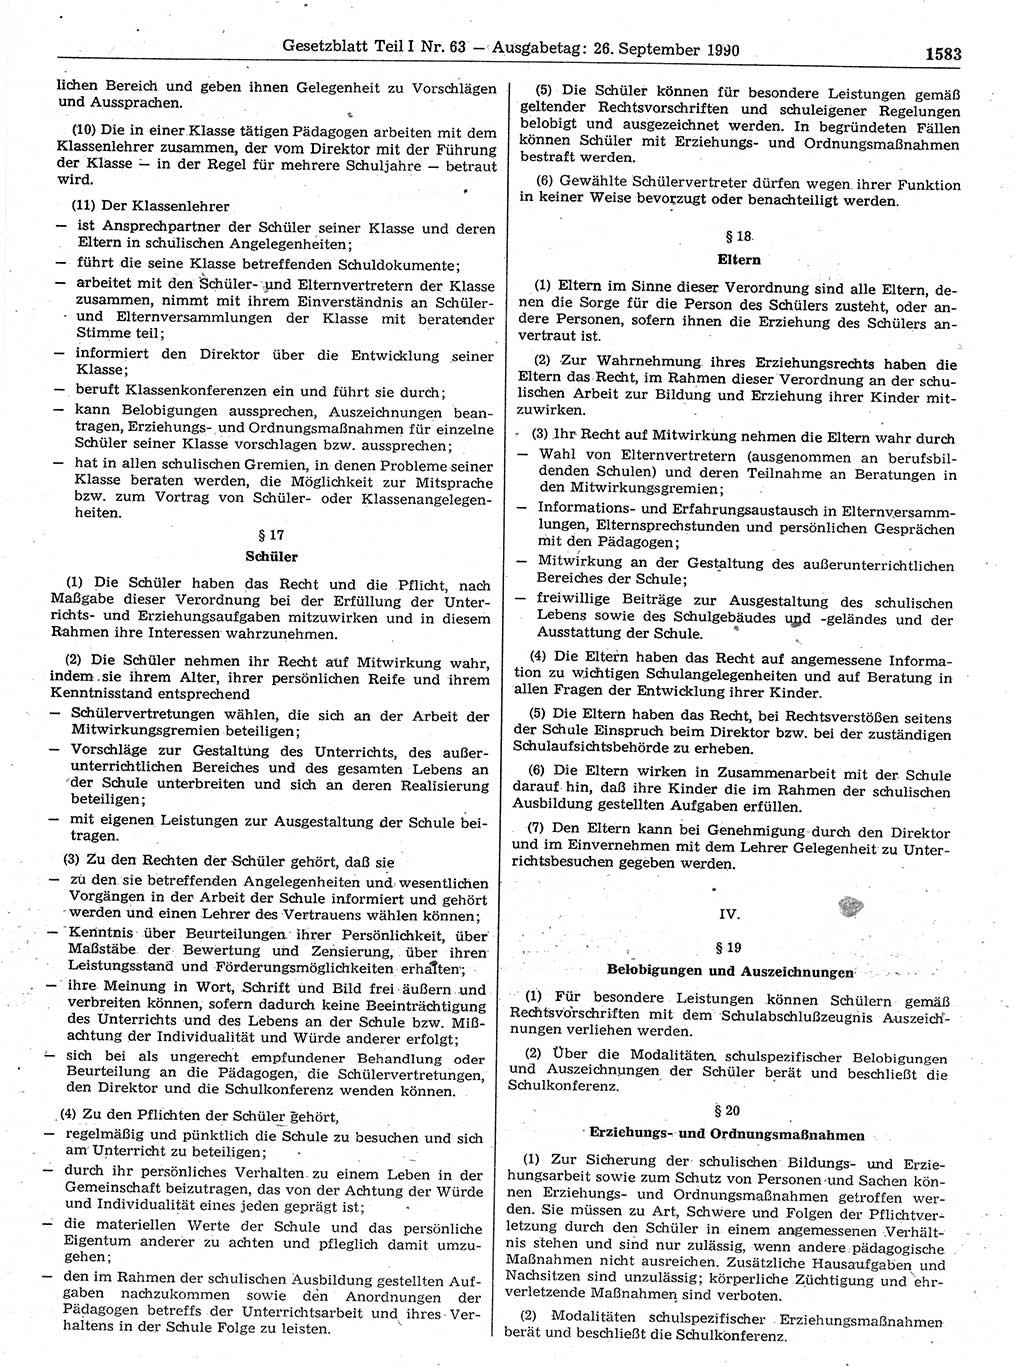 Gesetzblatt (GBl.) der Deutschen Demokratischen Republik (DDR) Teil Ⅰ 1990, Seite 1583 (GBl. DDR Ⅰ 1990, S. 1583)